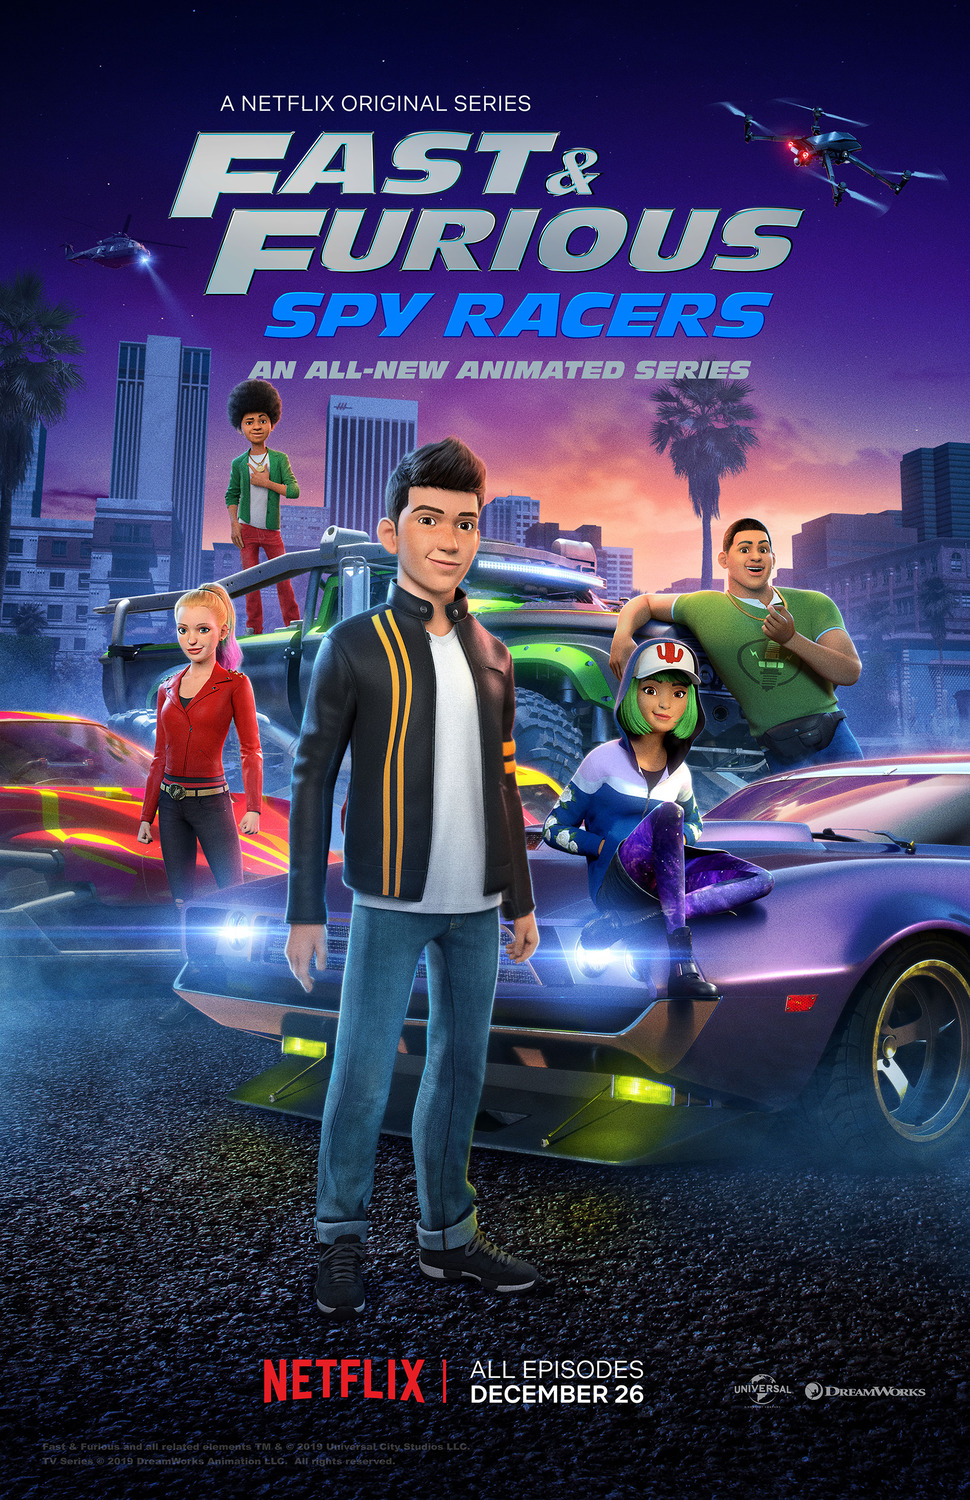 ดูหนังออนไลน์ฟรี Fast & Furious Spy Racers Season 6 EP.9 เร็วแรงทะลุนรก ซิ่งสยบโลก ซีซั่น 6 ตอนที่ 9